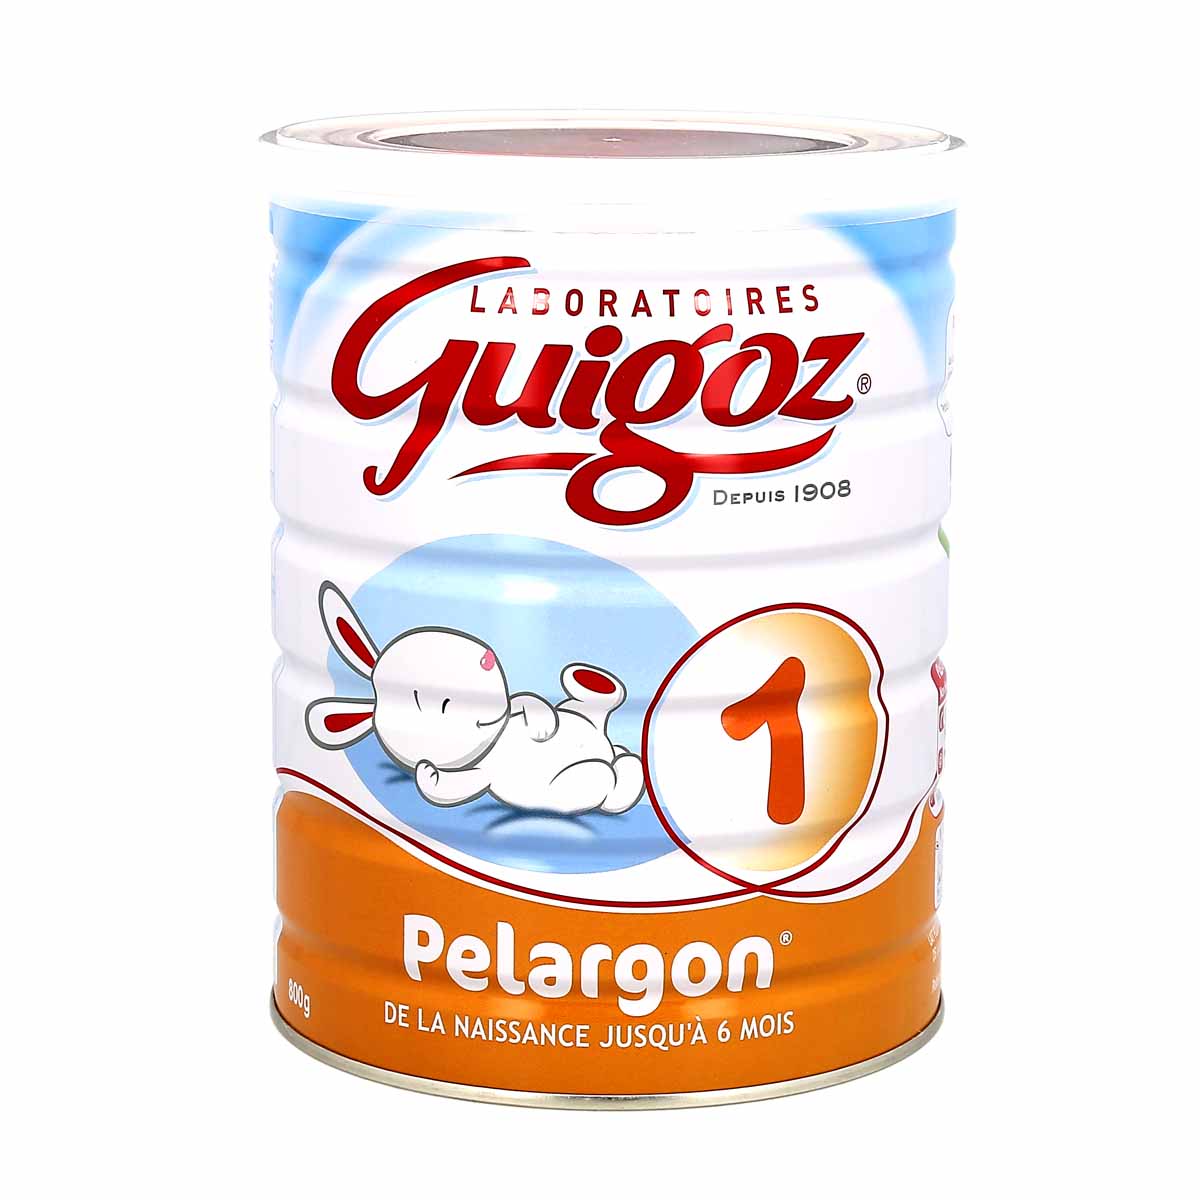 Guigoz pelargon 1 de 0 à 6 mois 800g - Pharmacie Grande Bretagne